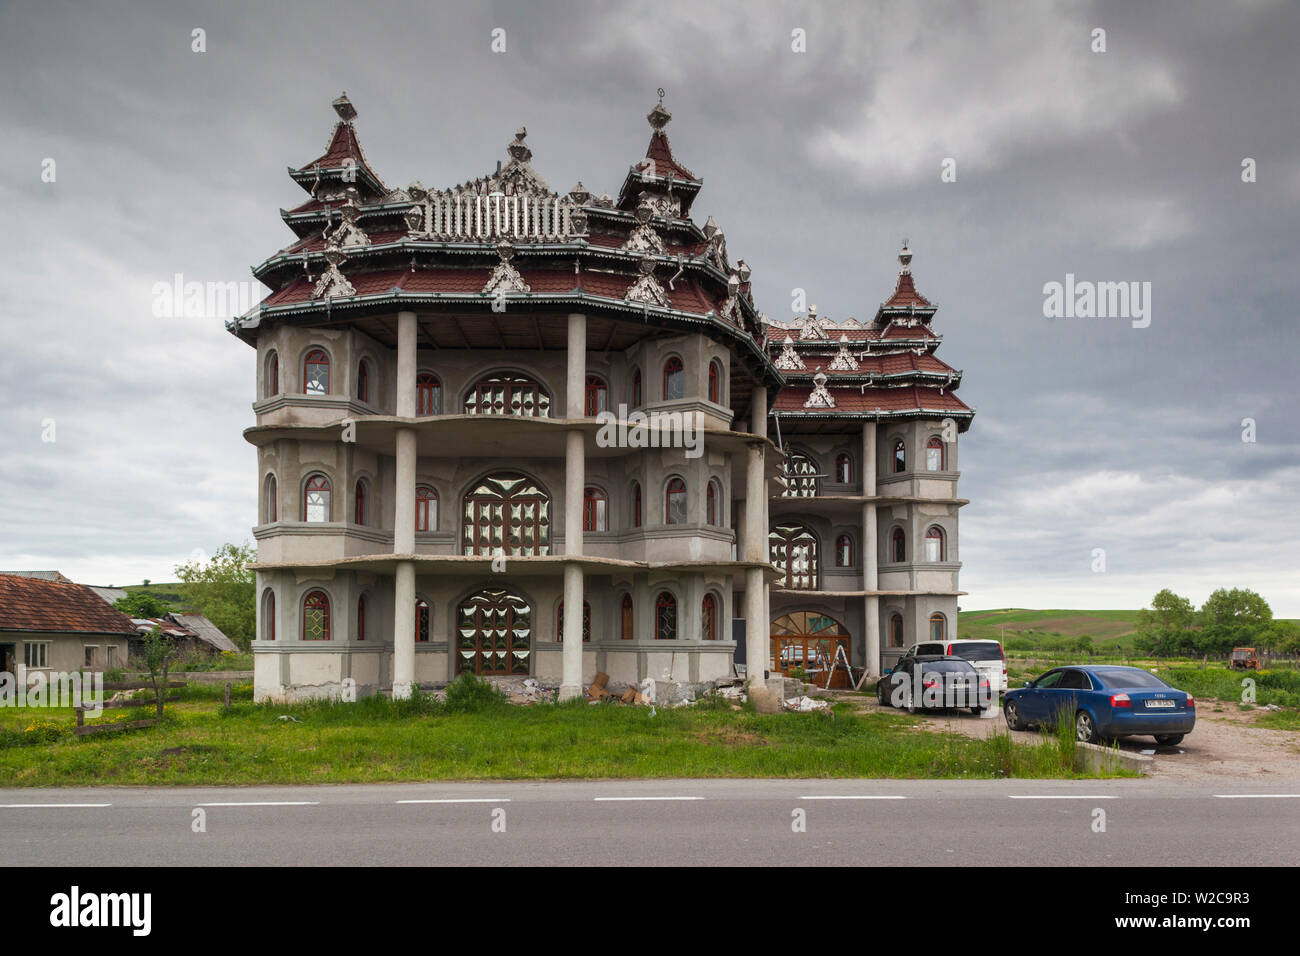 La Roumanie, la Transylvanie, Huedin, Roma de palais, de grandes maisons construites par les familles roms expatrié Banque D'Images